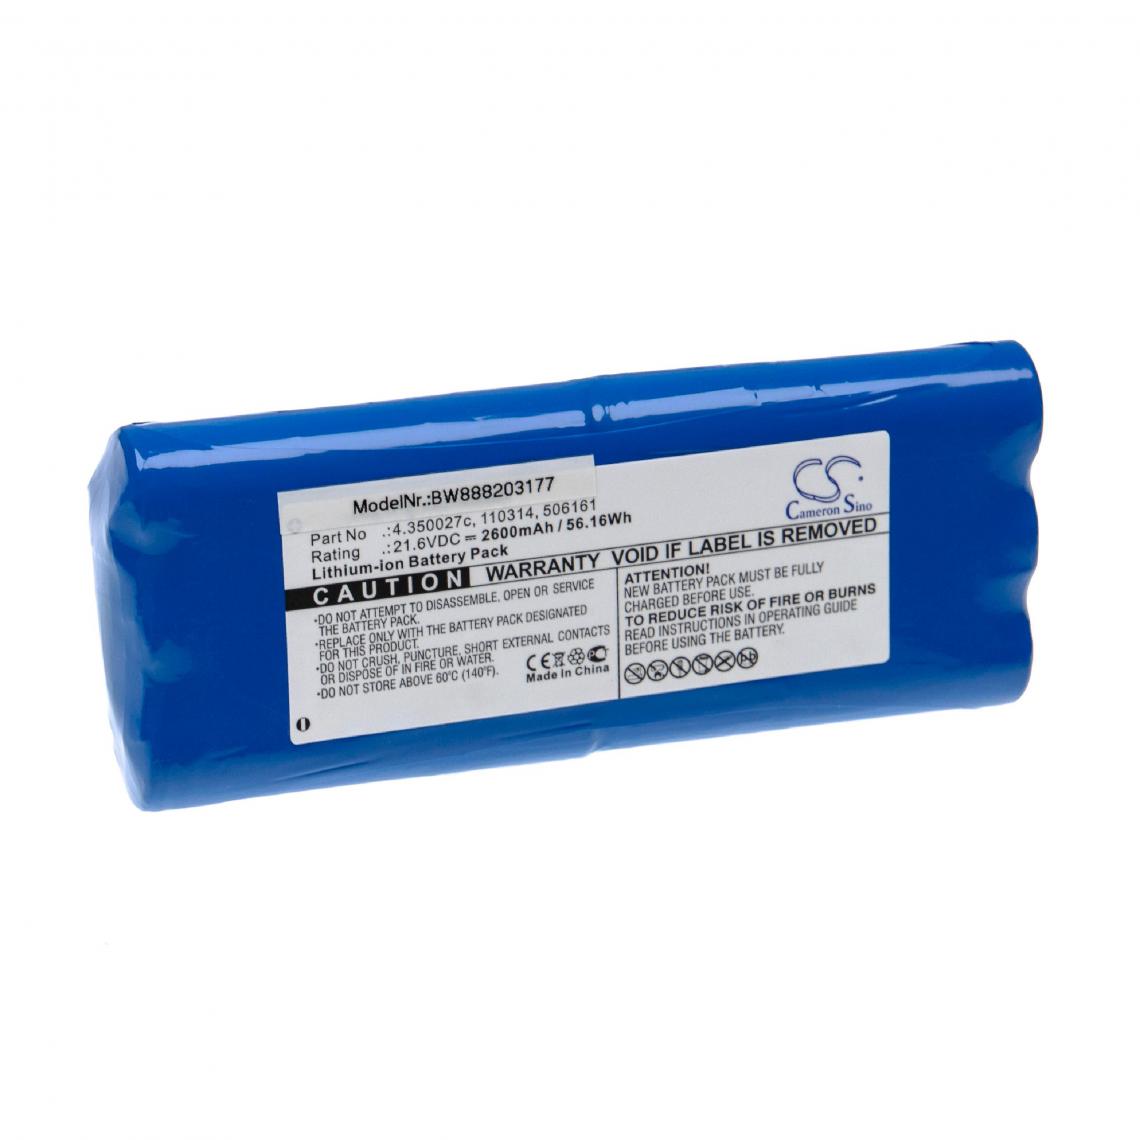 Vhbw - vhbw Batterie remplacement pour Schiller 02175, 3.920509, 4.350027c, 506161 pour appareil médical (2600mAh, 21,6V, Li-ion) - Piles spécifiques